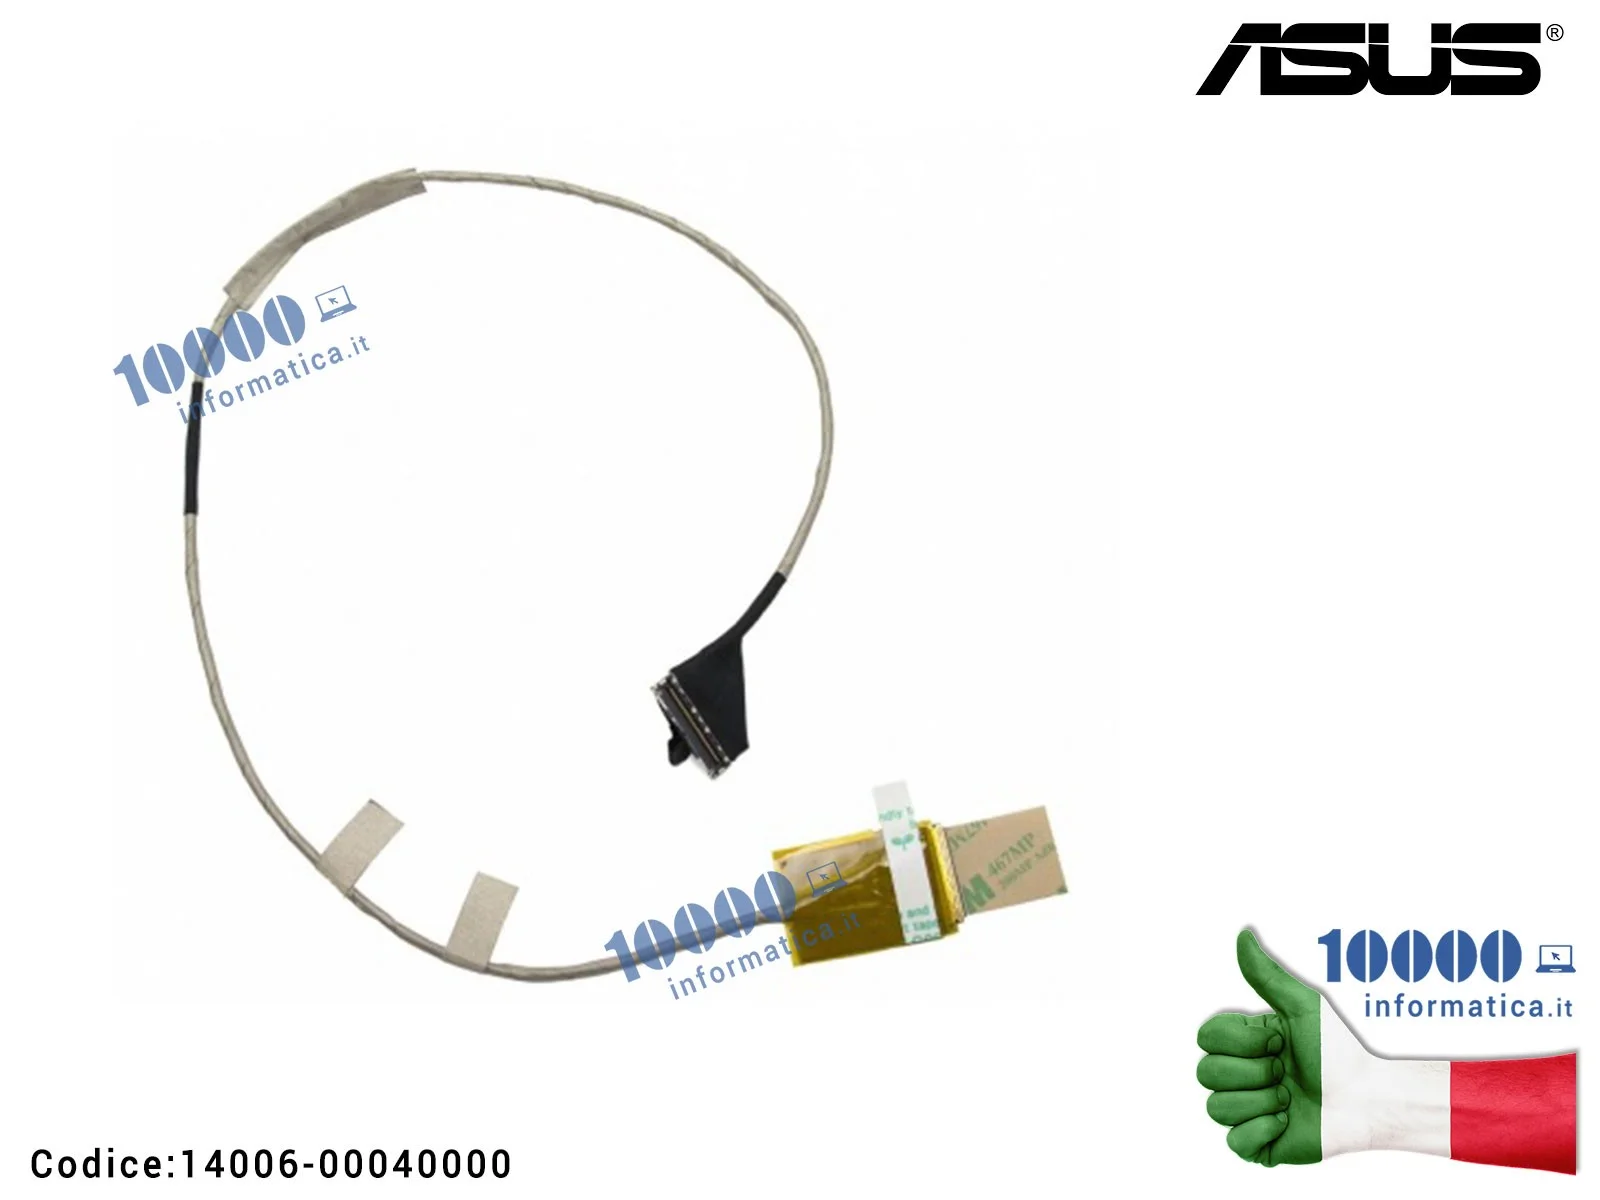 14006-00040000 Cavo Flat LCD ASUS [VERSIONE 2D] ROG G75 G75VW G75VX G75VM G75VN [2D] 1422-016A000